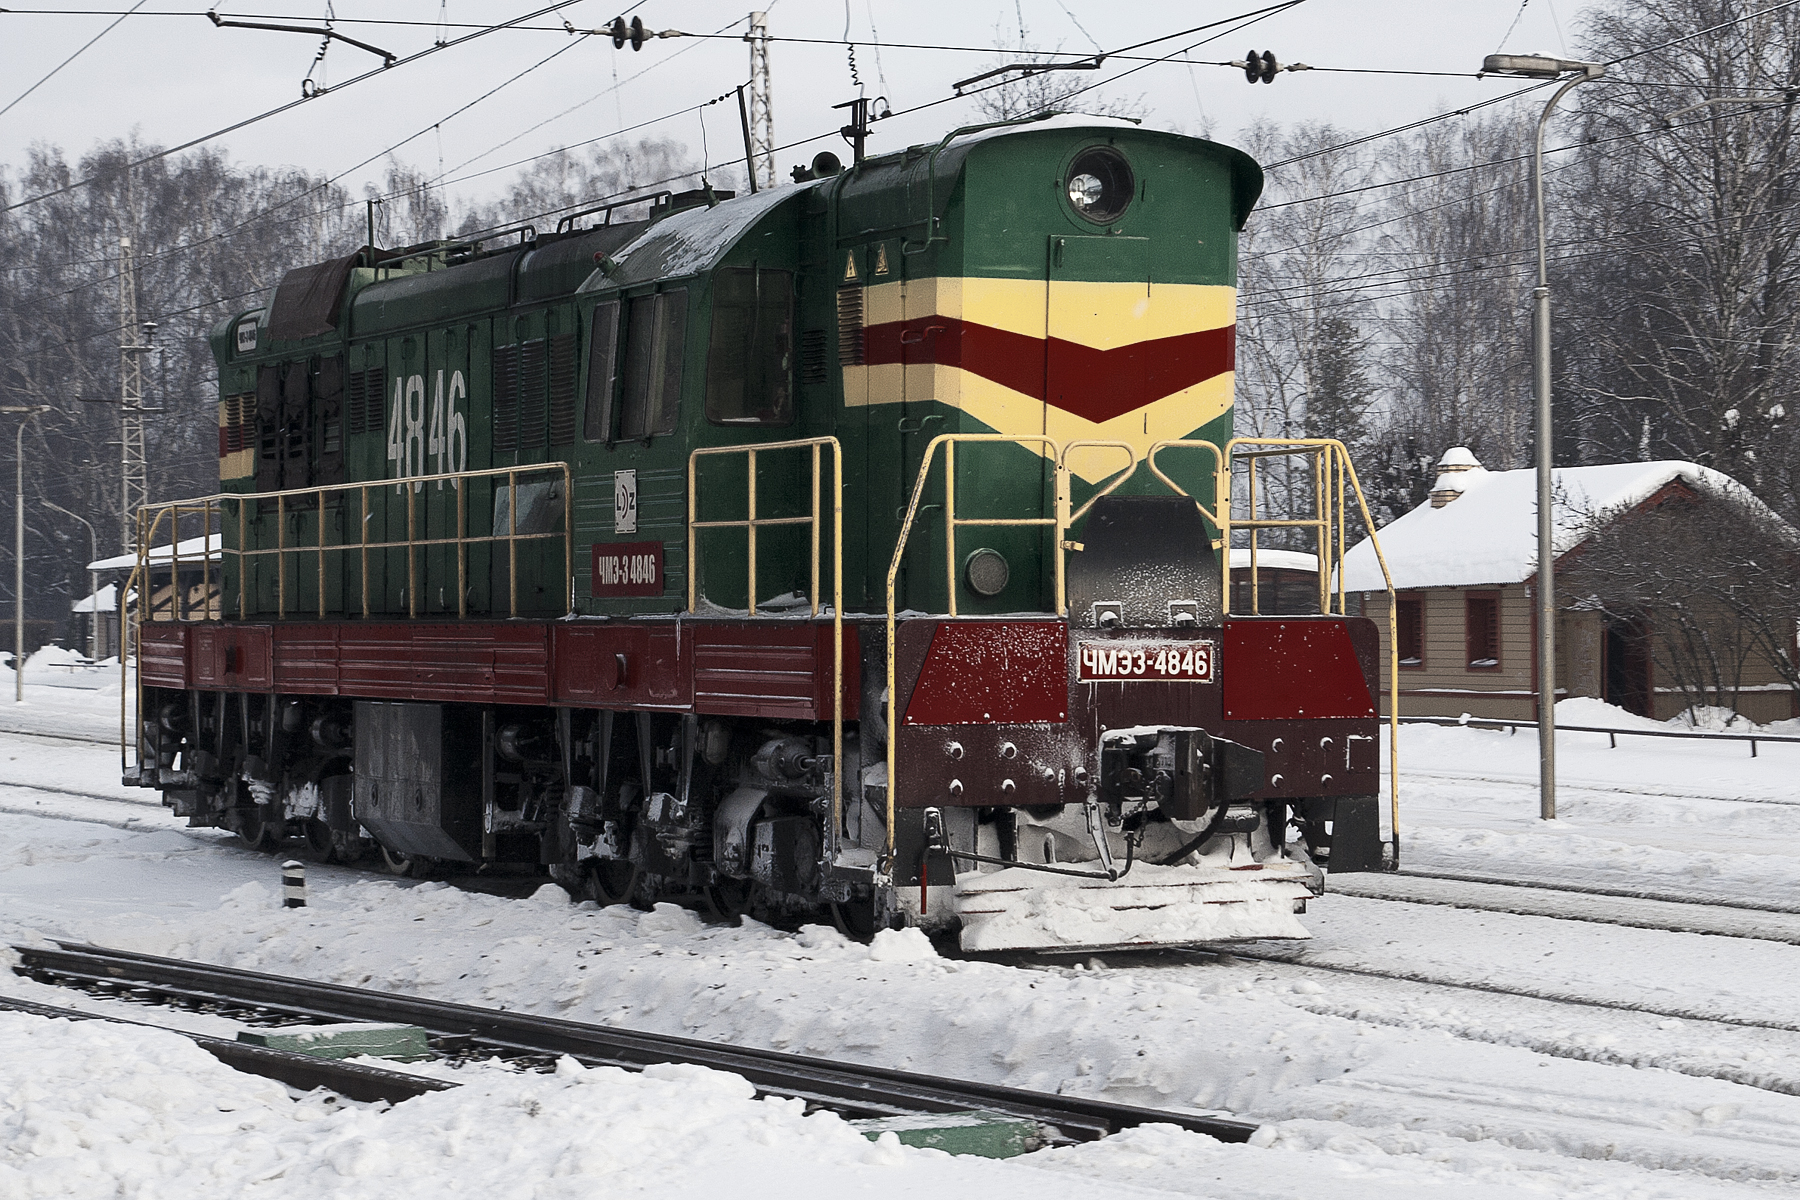 Old Locomotive In Snow Via @Atisgailis